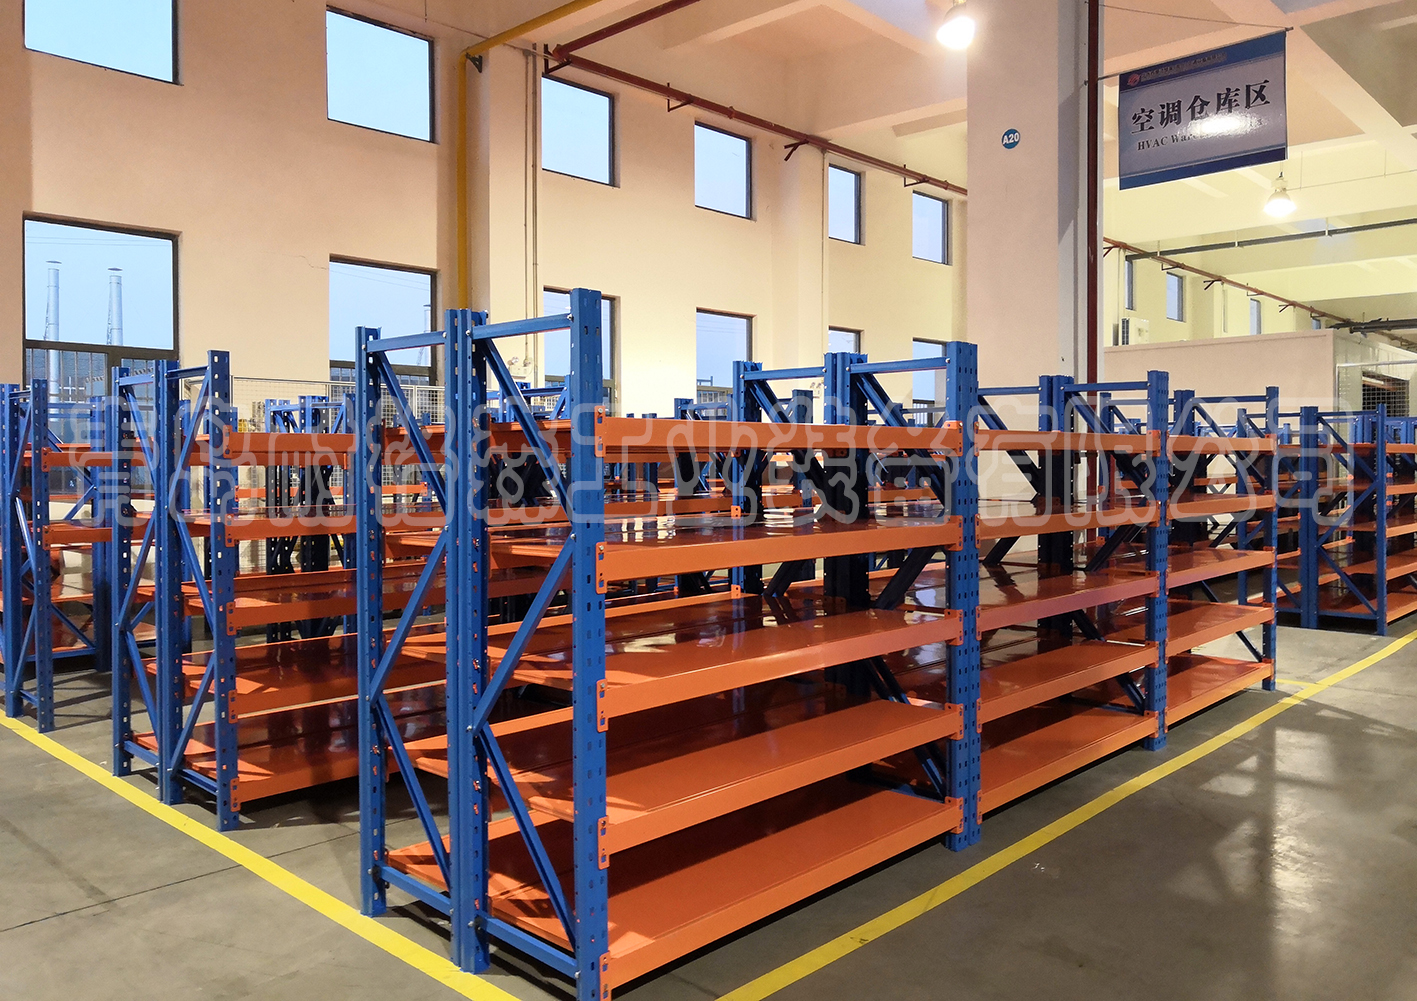 青岛市中量型层板货架厂家提供优质青岛耐格森中量型层板货架